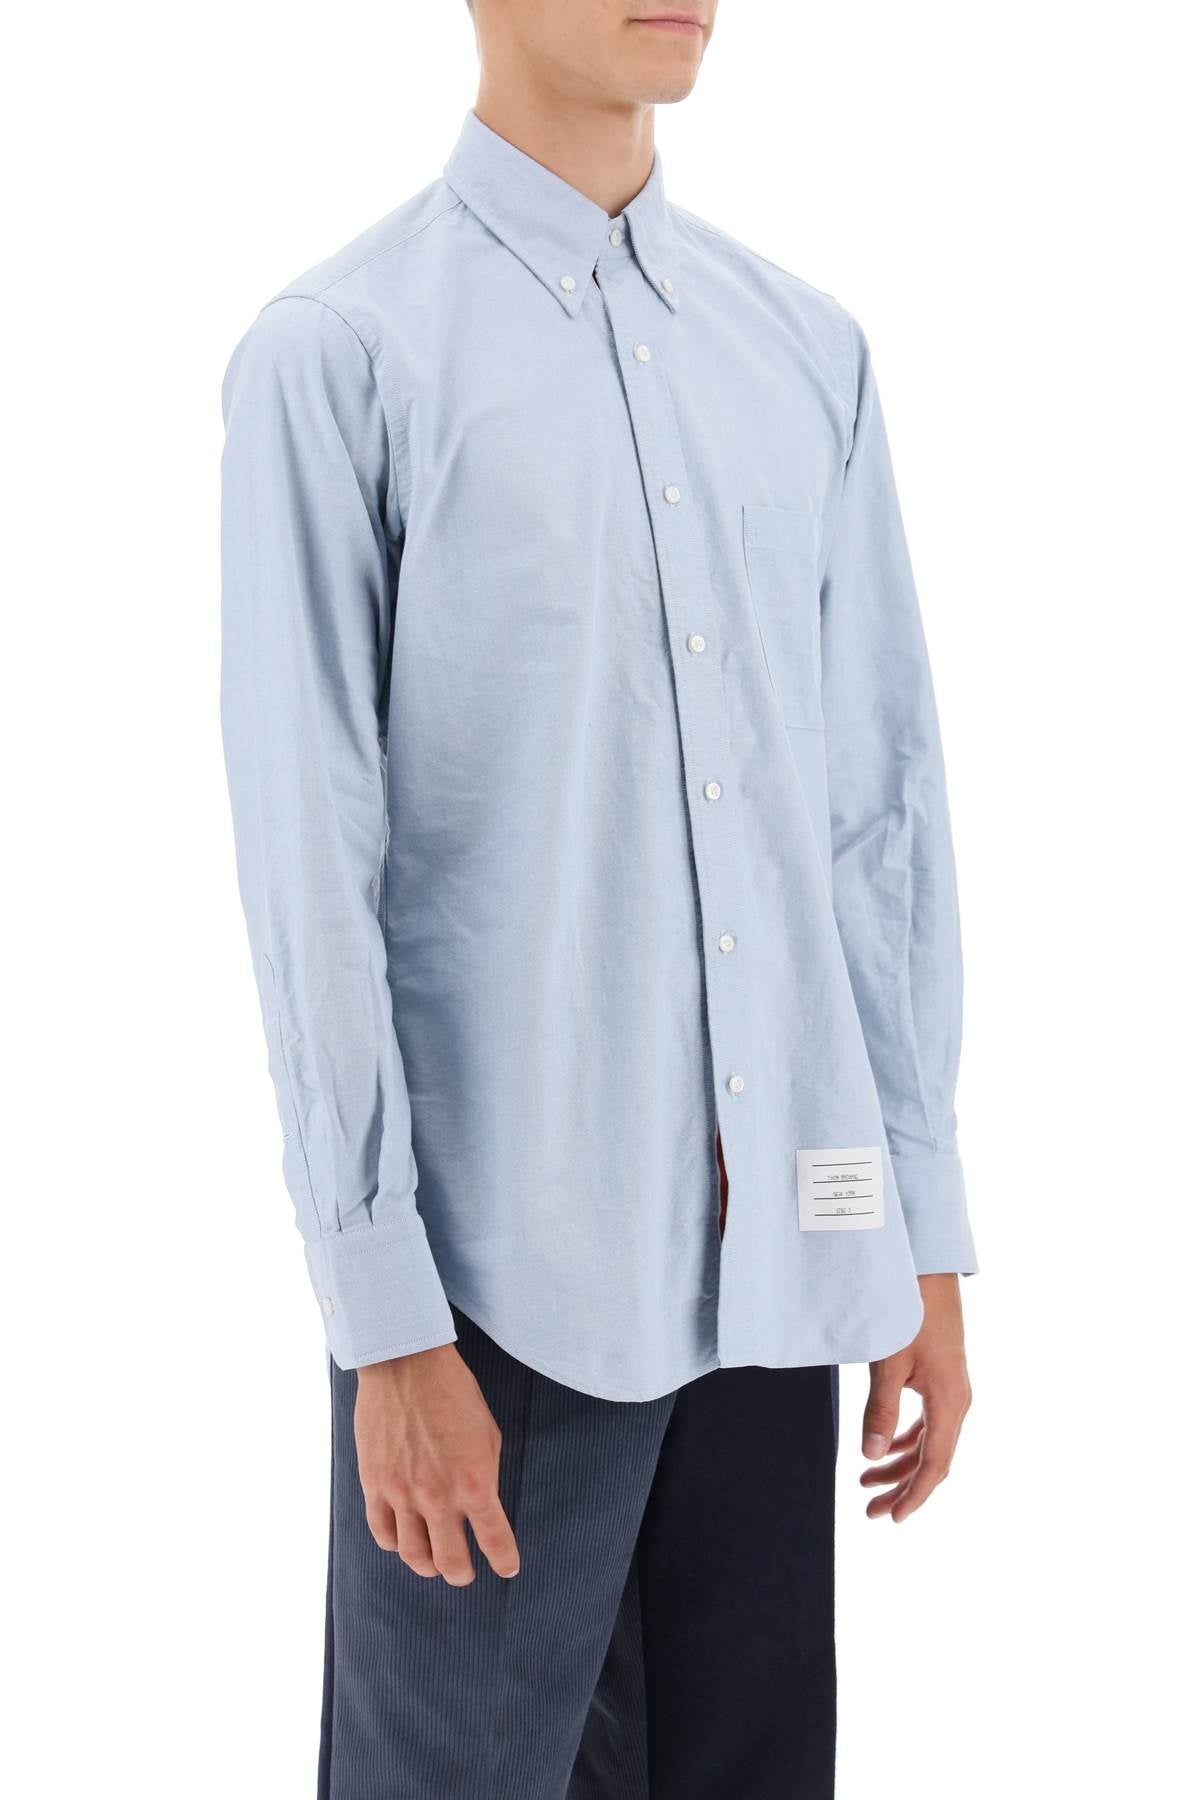 Oxford Cotton Button Down Shirt - 4